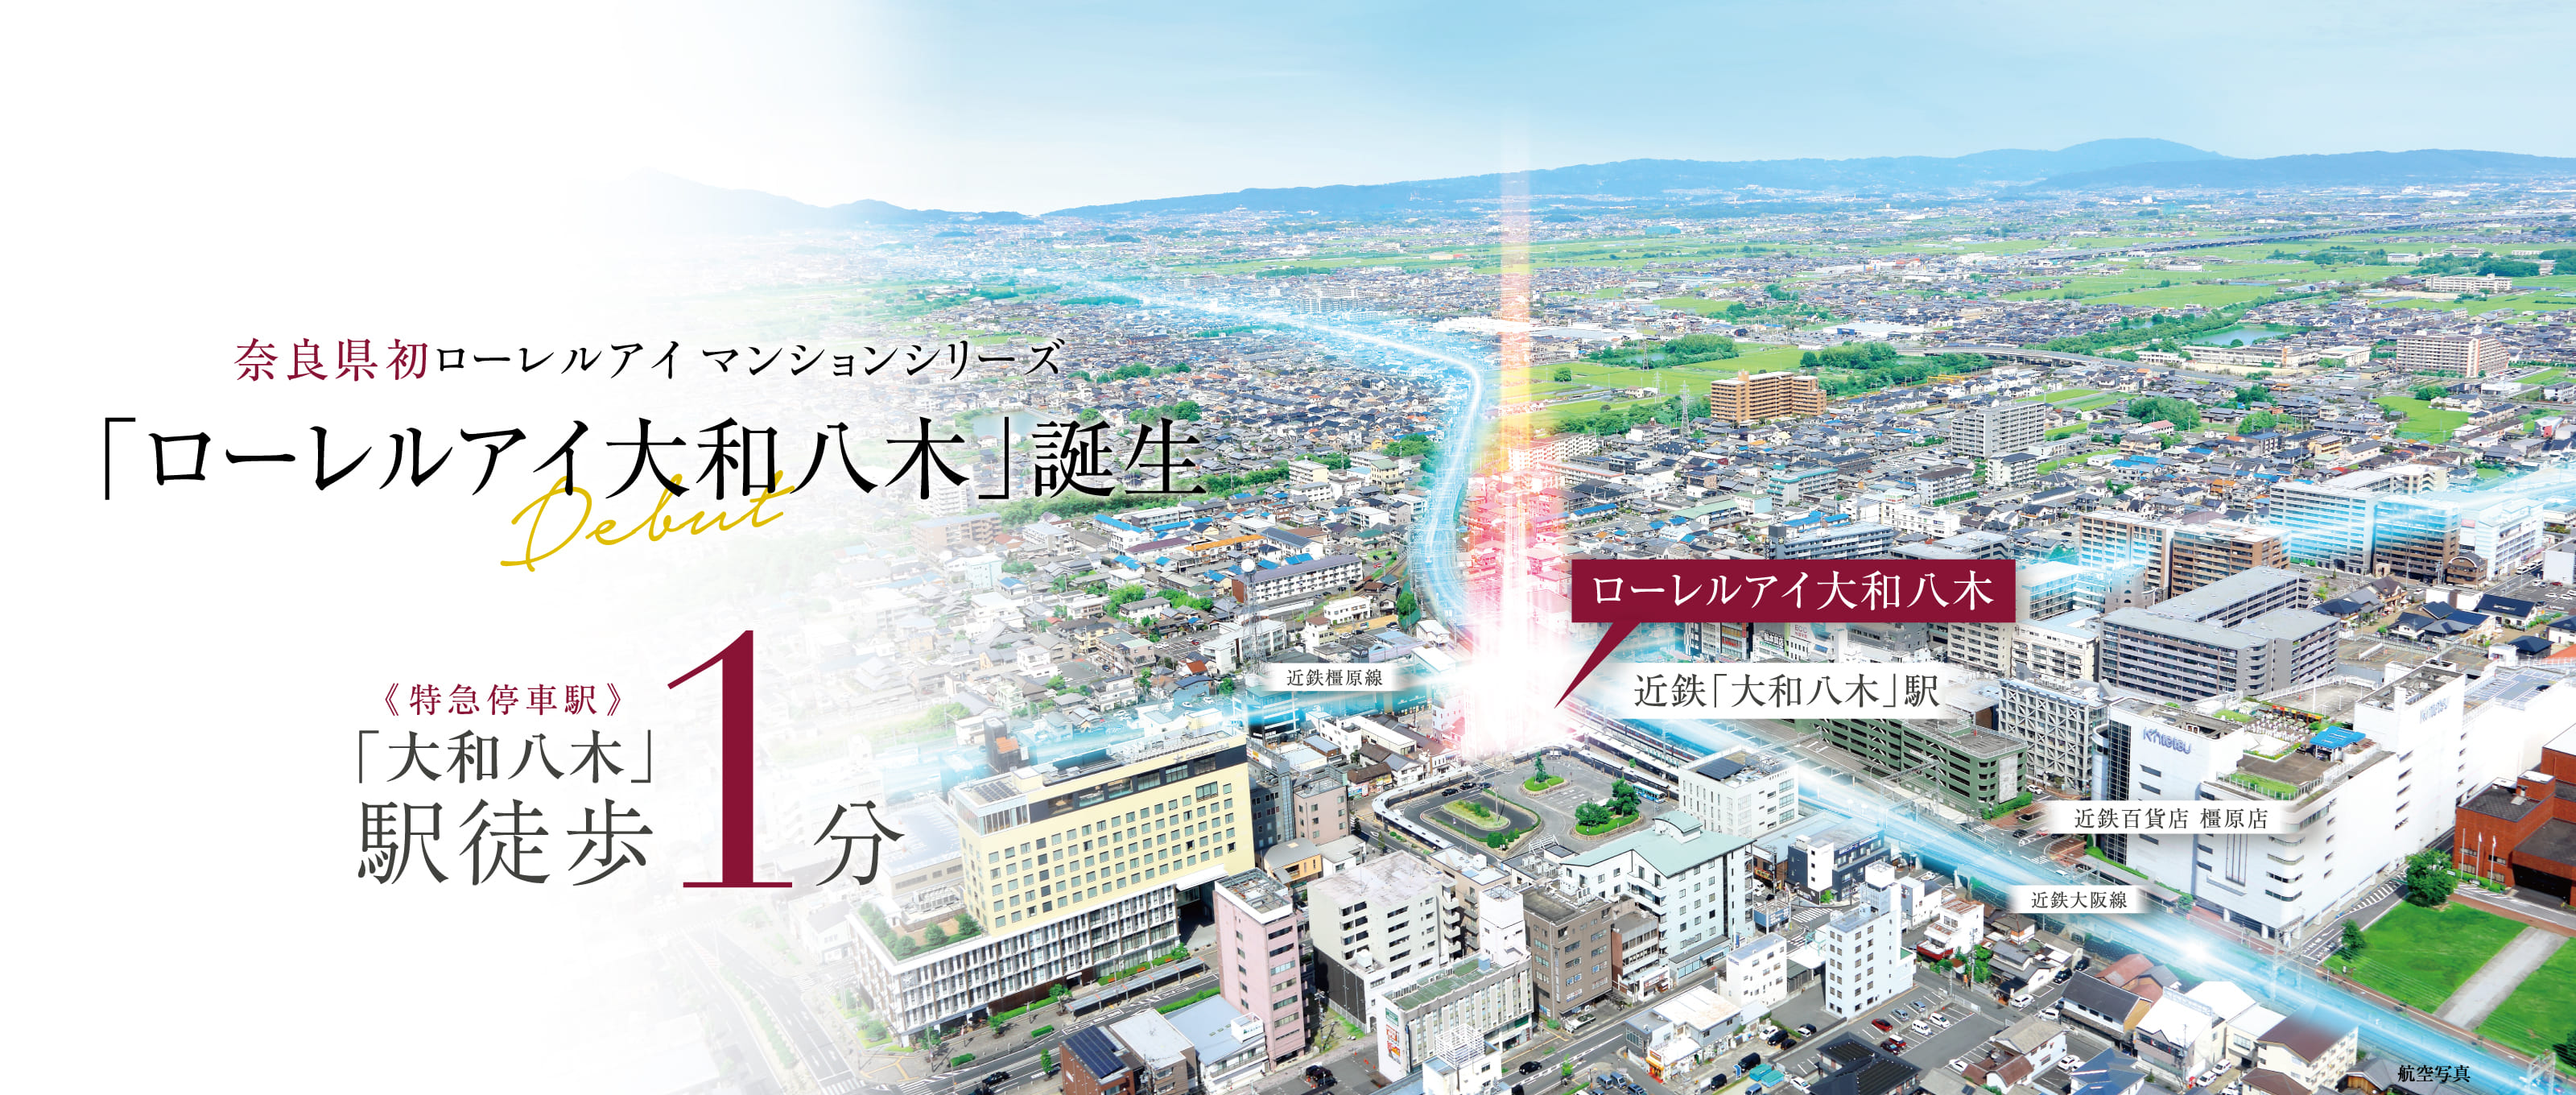 大和八木駅徒歩1分 奈良県初ローレルアイマンションシリーズ「ローレルアイ大和八木」誕生